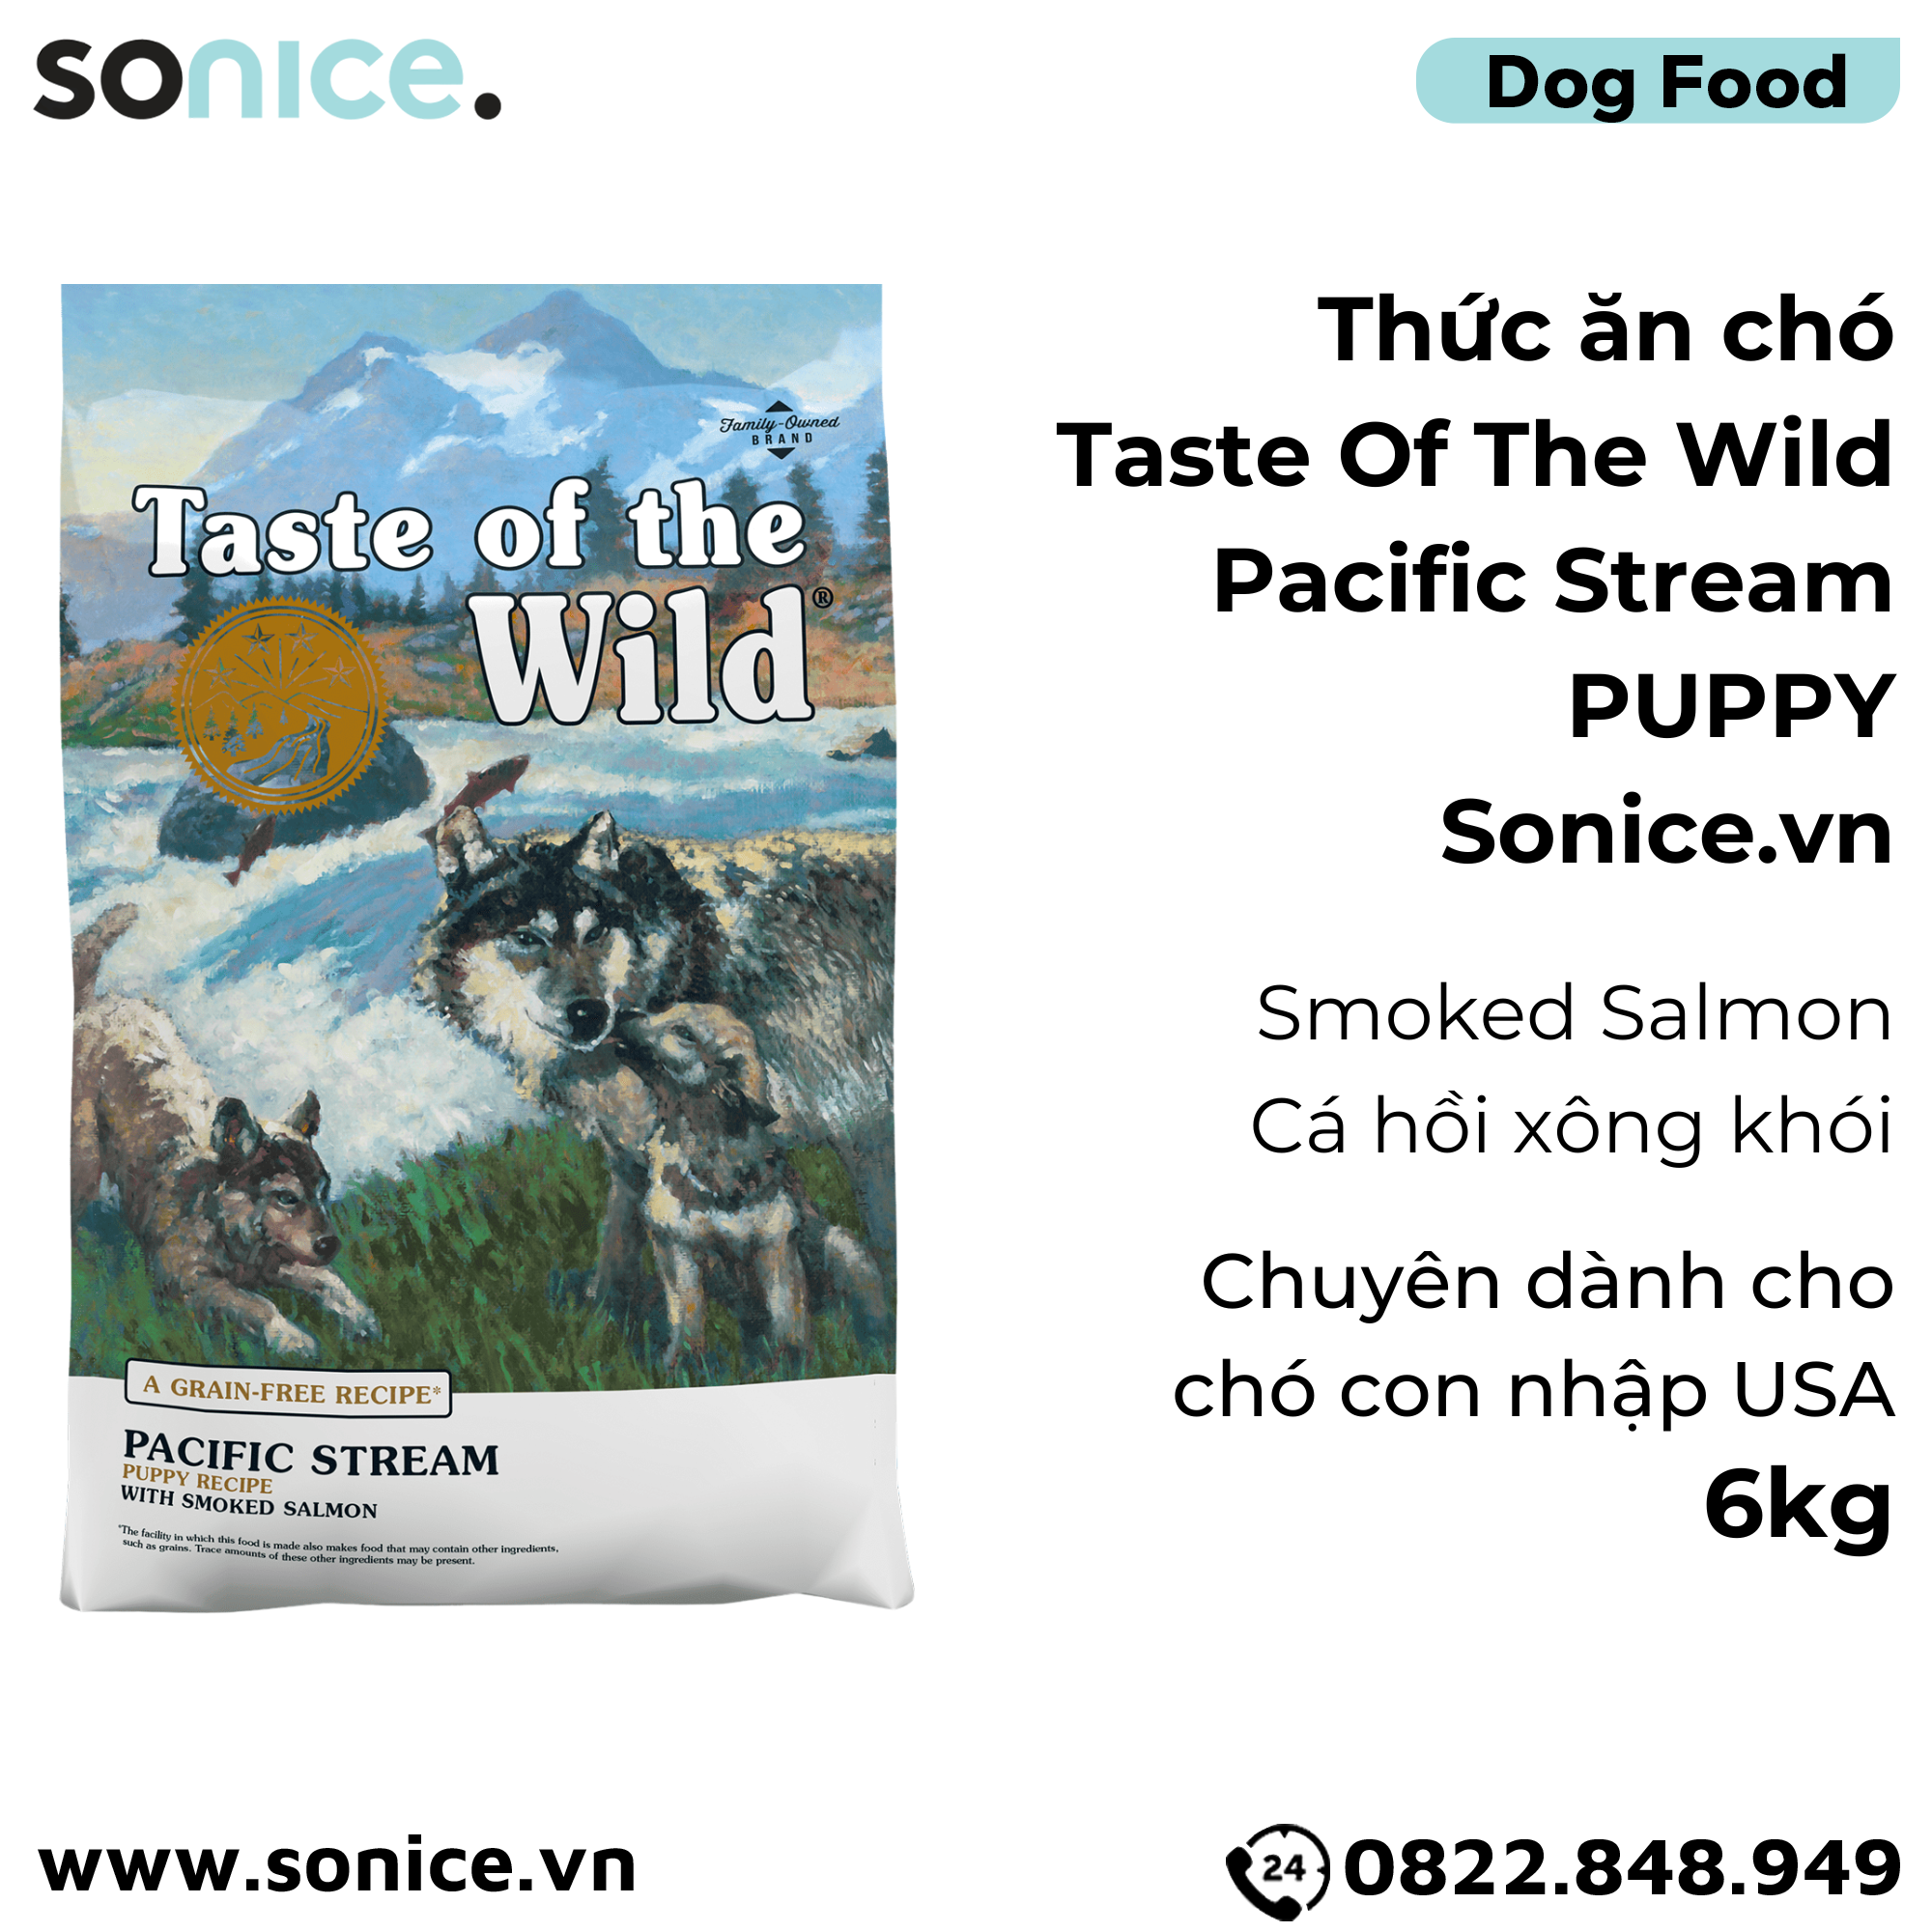  Thức ăn chó Taste Of The Wild Pacific Stream PUPPY 6kg - Smoked Salmon, Cá Hồi Xông Khói - chuyên chó con nhập USA SONICE. 